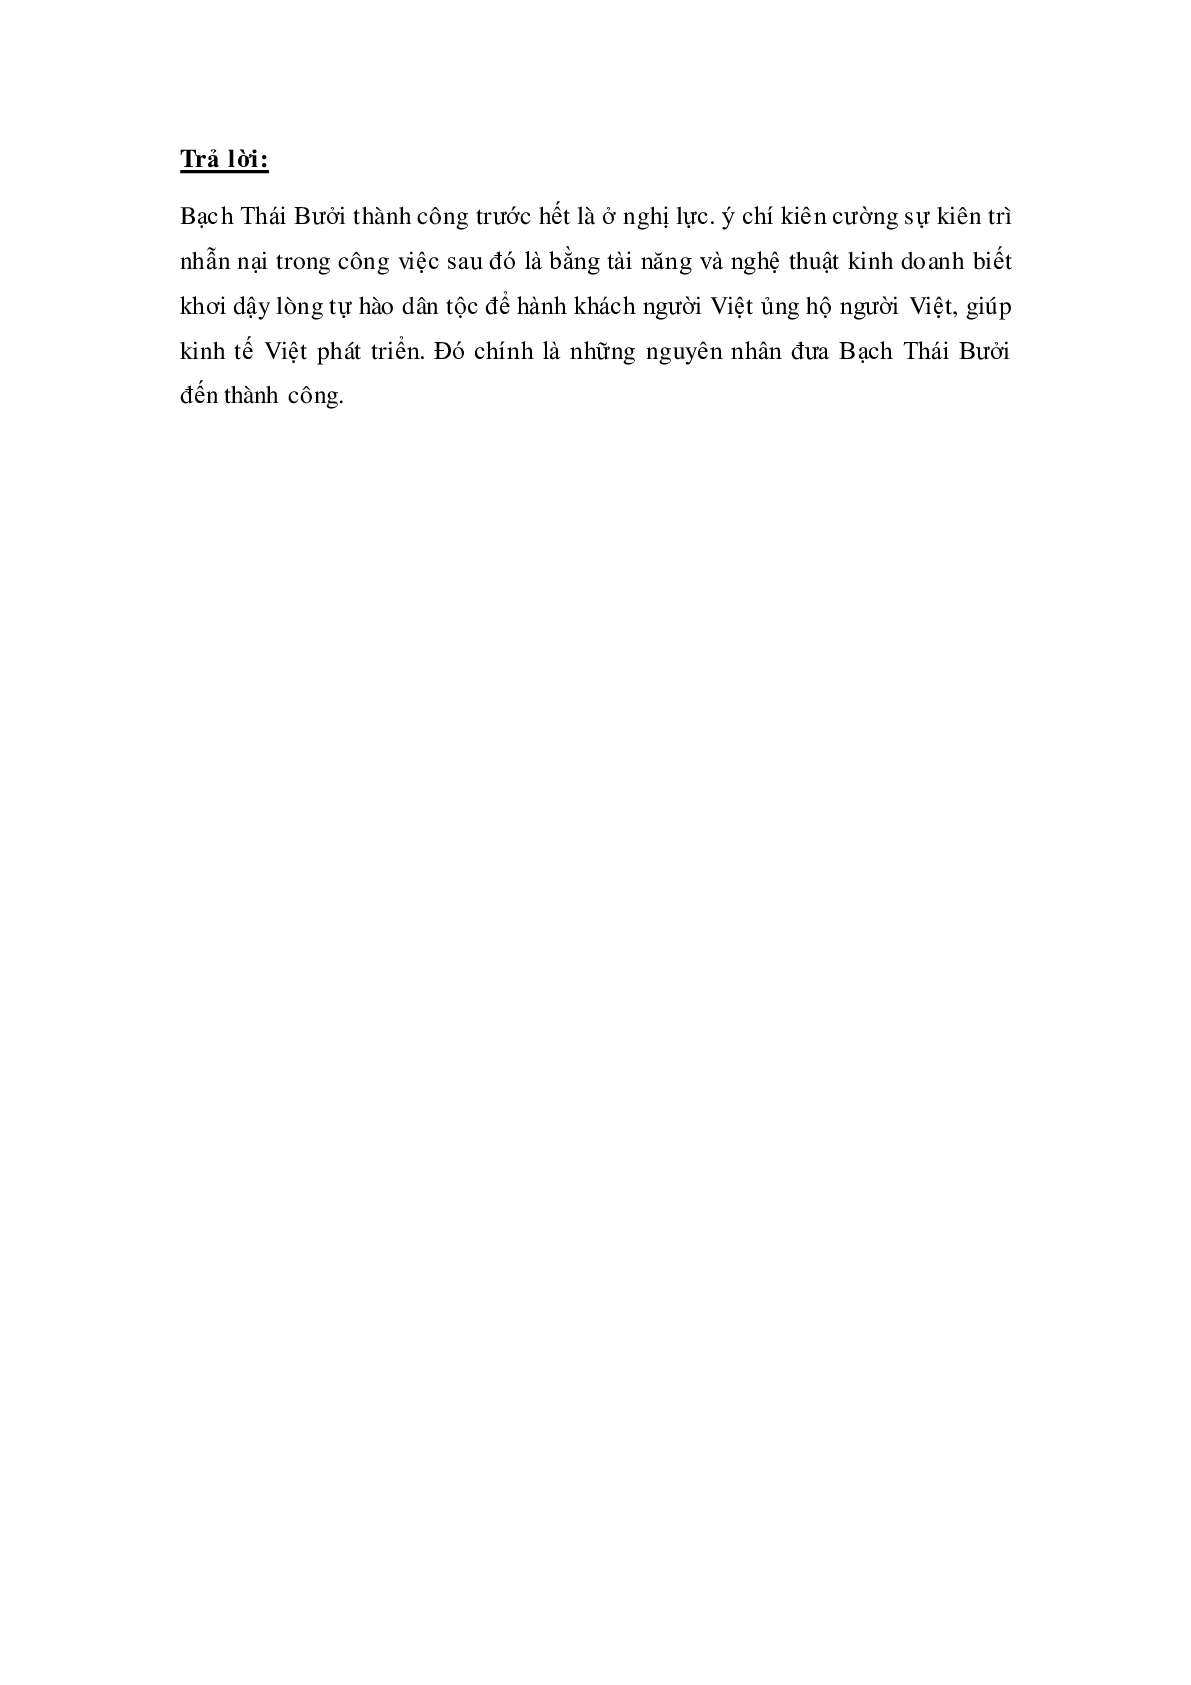 Soạn Tiếng Việt lớp 4: Tập đọc: Vua tàu thủy Bạch Thái Bưởi mới nhất (trang 3)